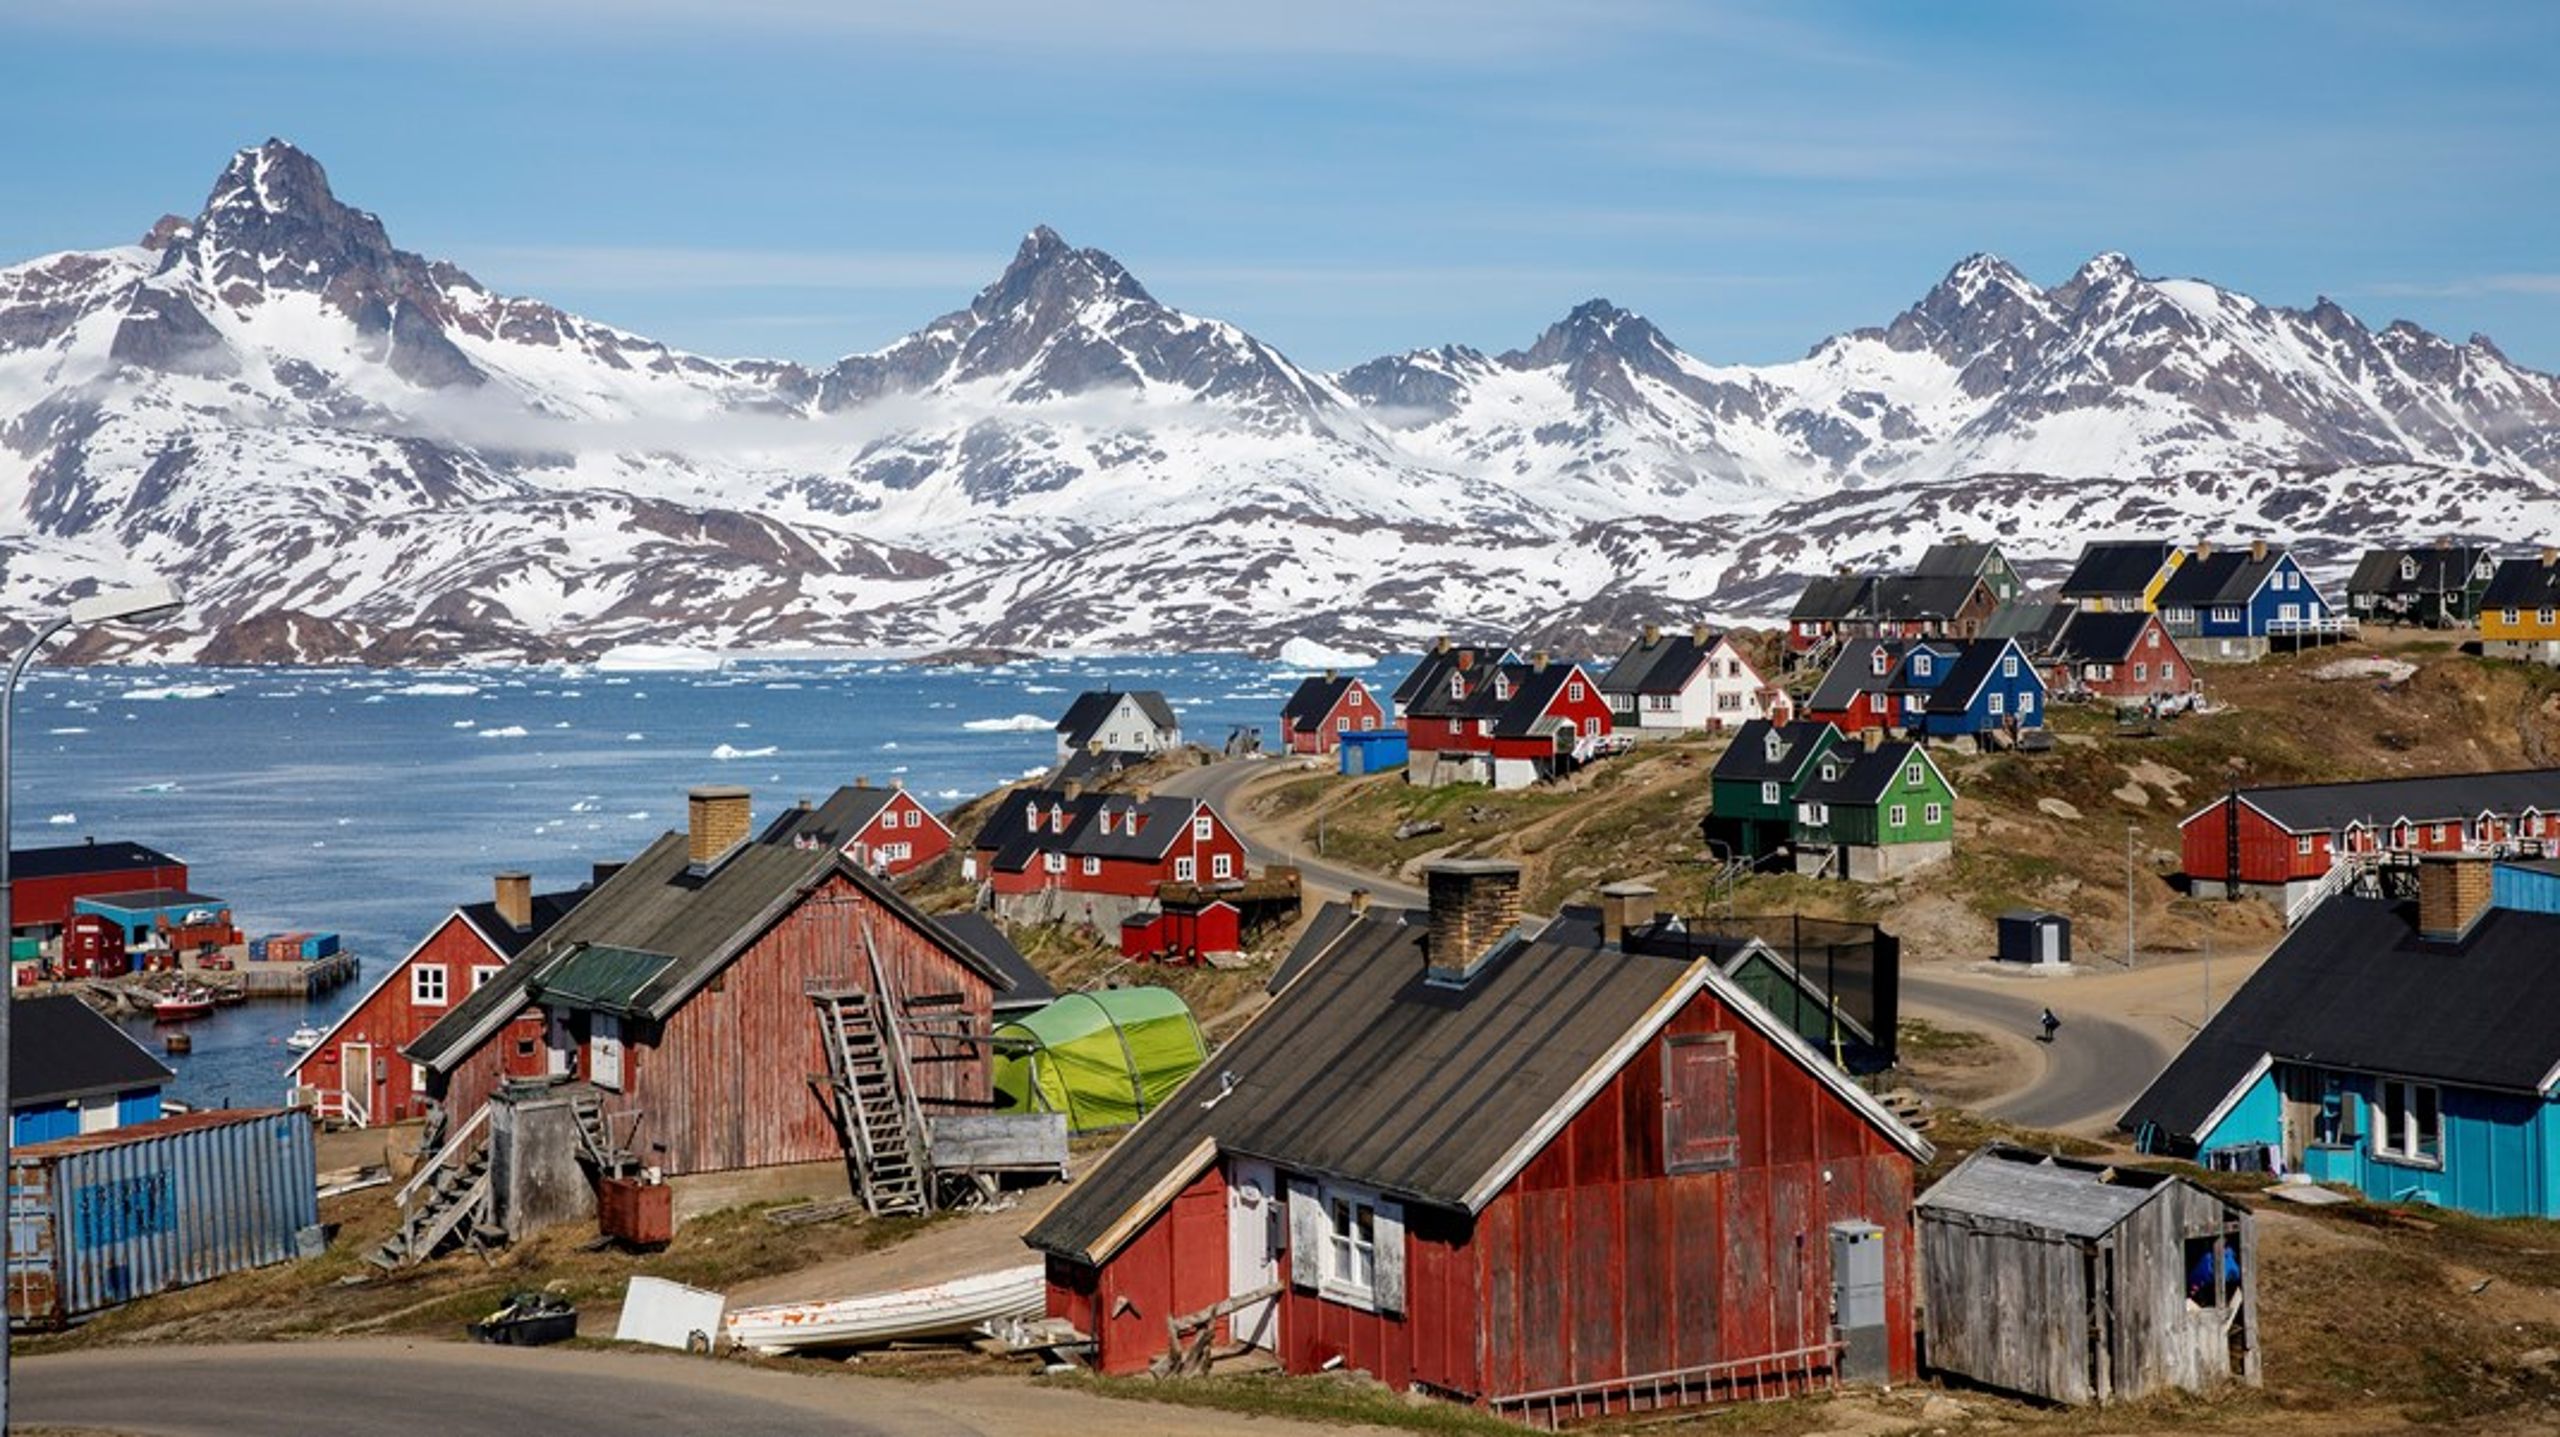 Selvom Grønland har enorme reserver af strategiske råstoffer, er der kun to miner i landet. Et strategisk samarbejde med EU om ressourcerne vil være til gavn for både Grønland og EU, skriver Jacob Taarup-Esbensen.